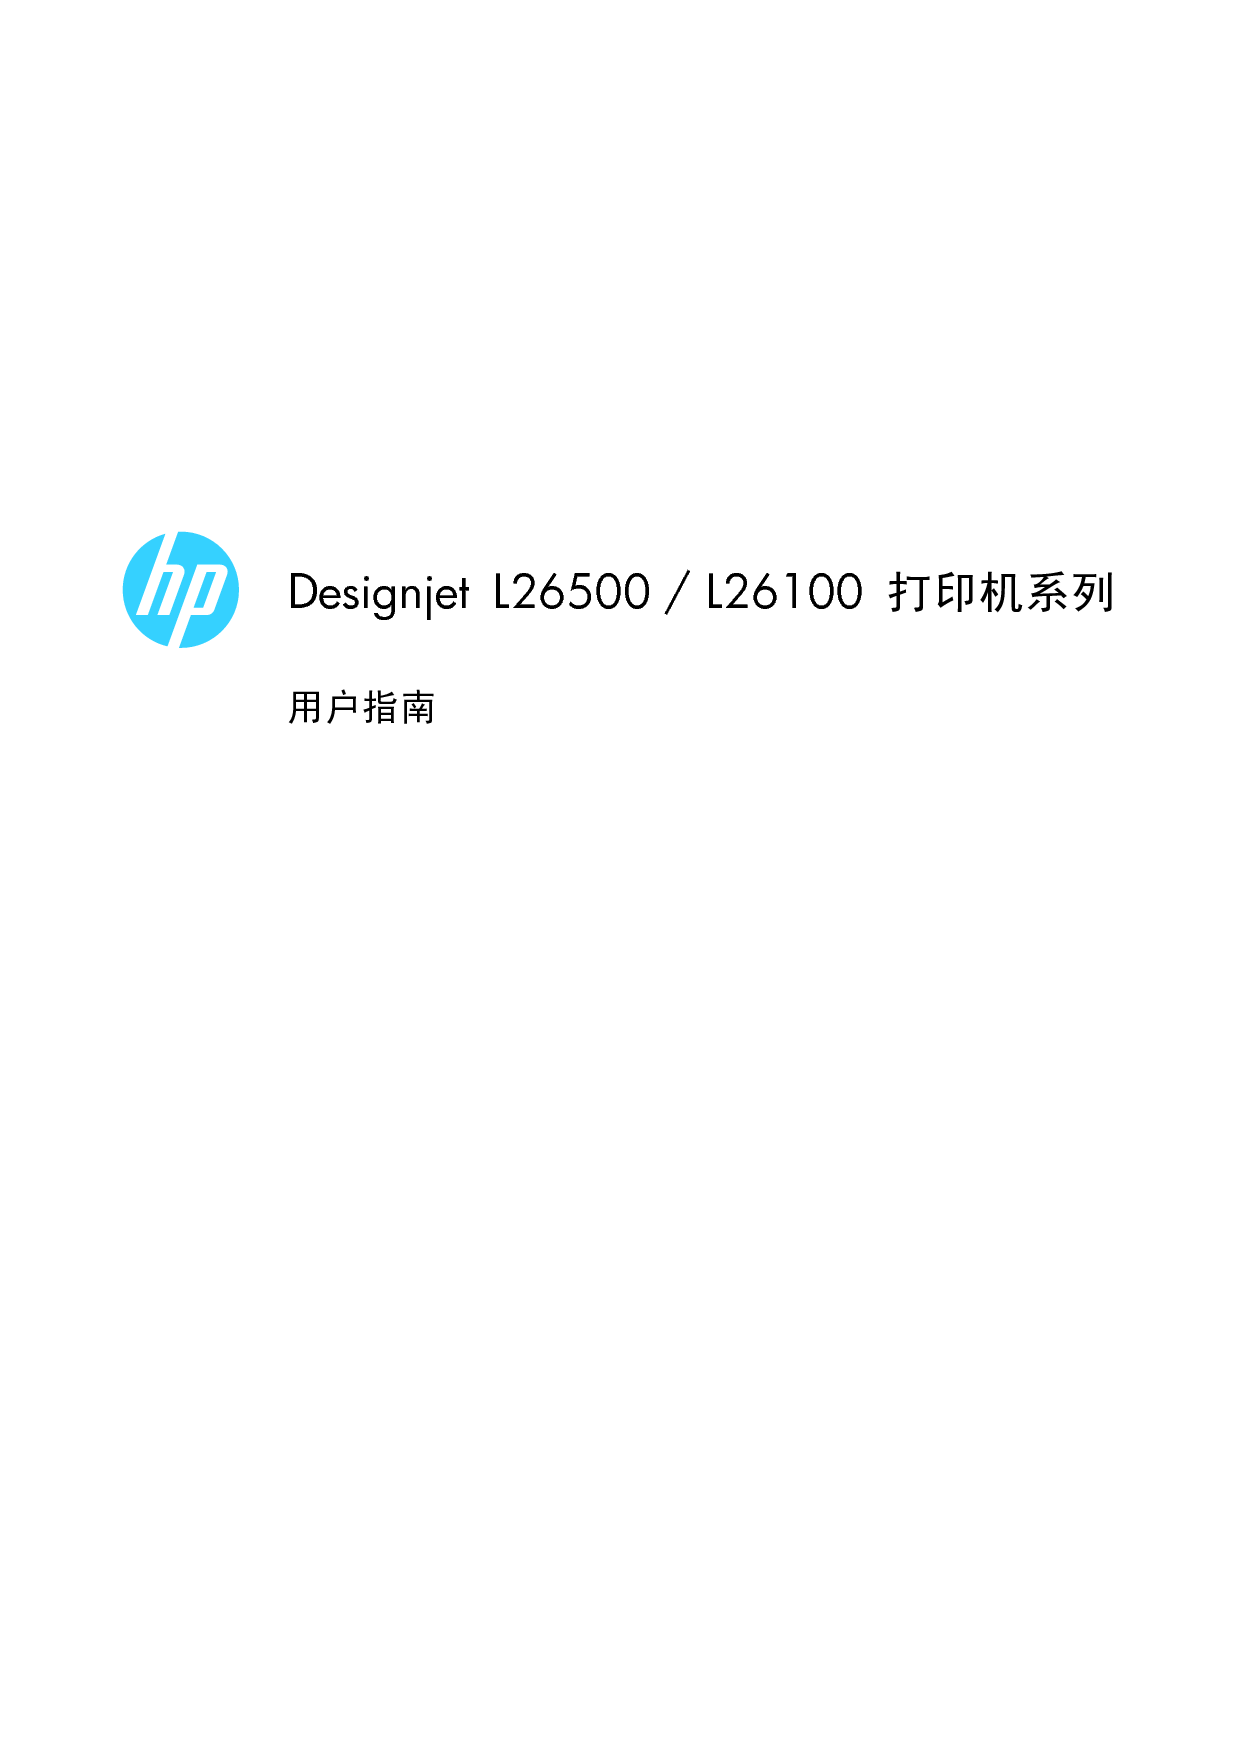 惠普 HP DesignJet L26100 用户指南 封面